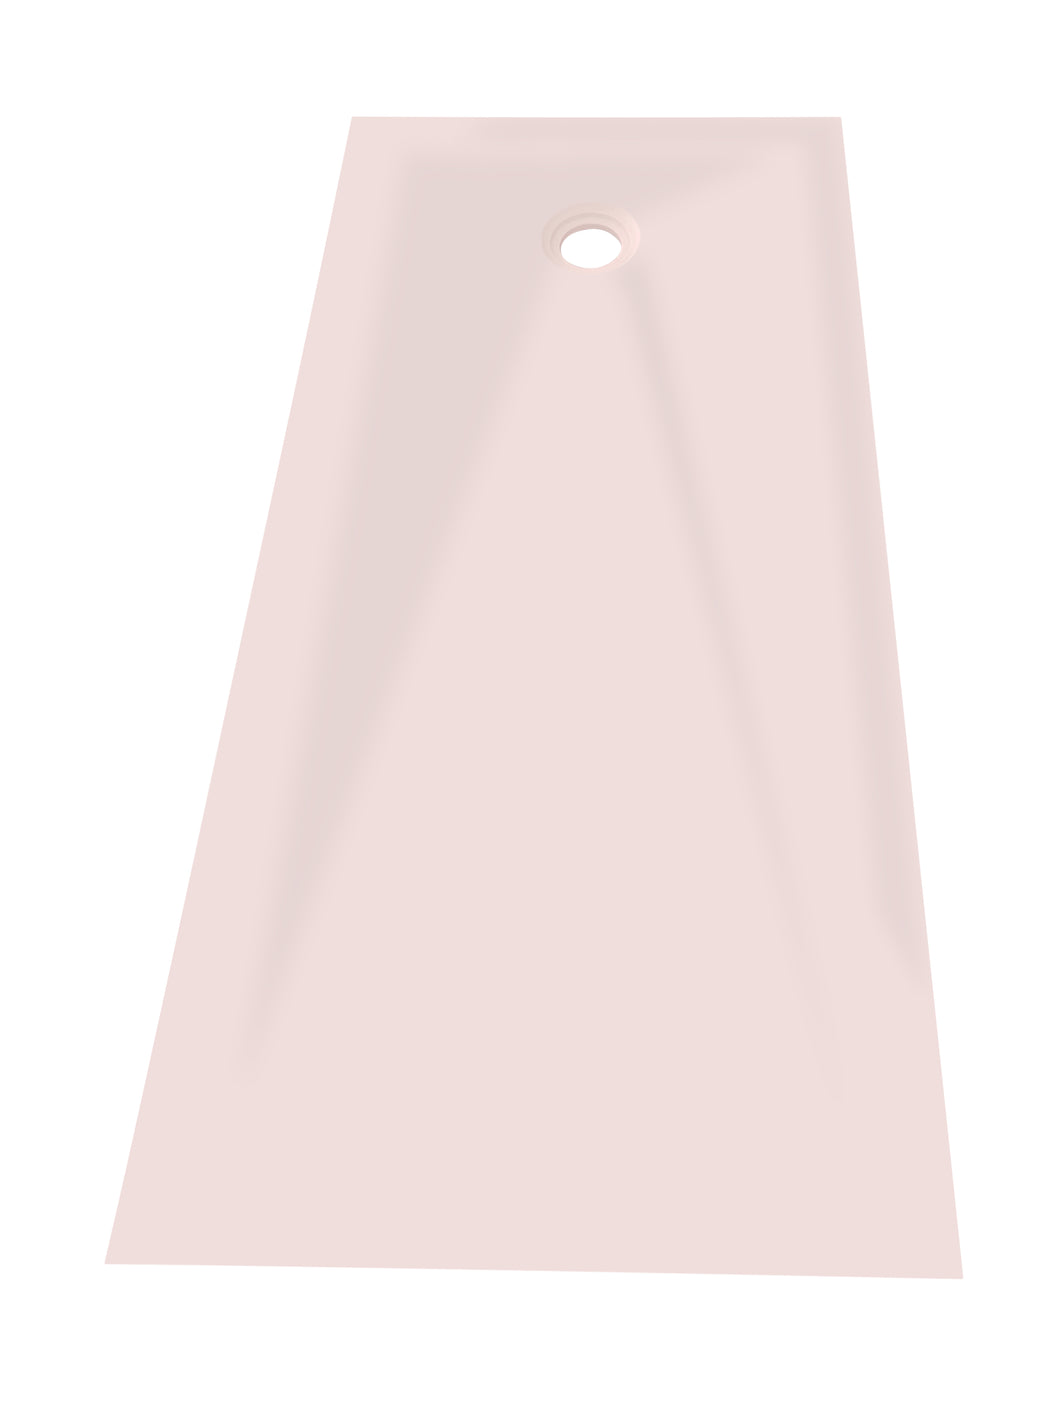 Receveur de douche Extra Plat - Couleur Opale Rose S304